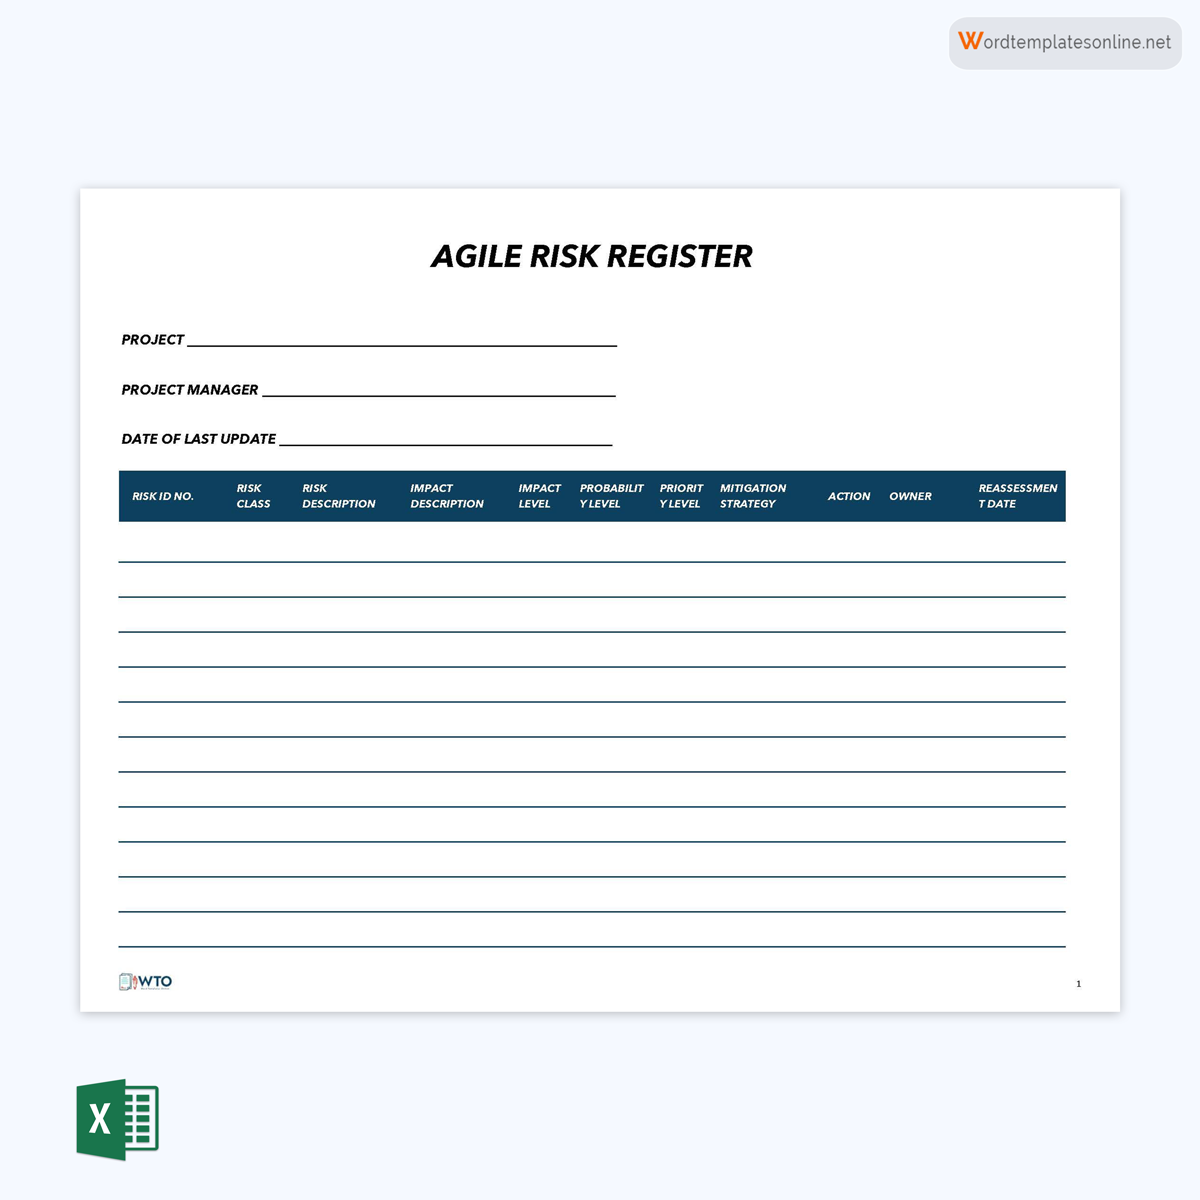 Agile Risk Register for IT 